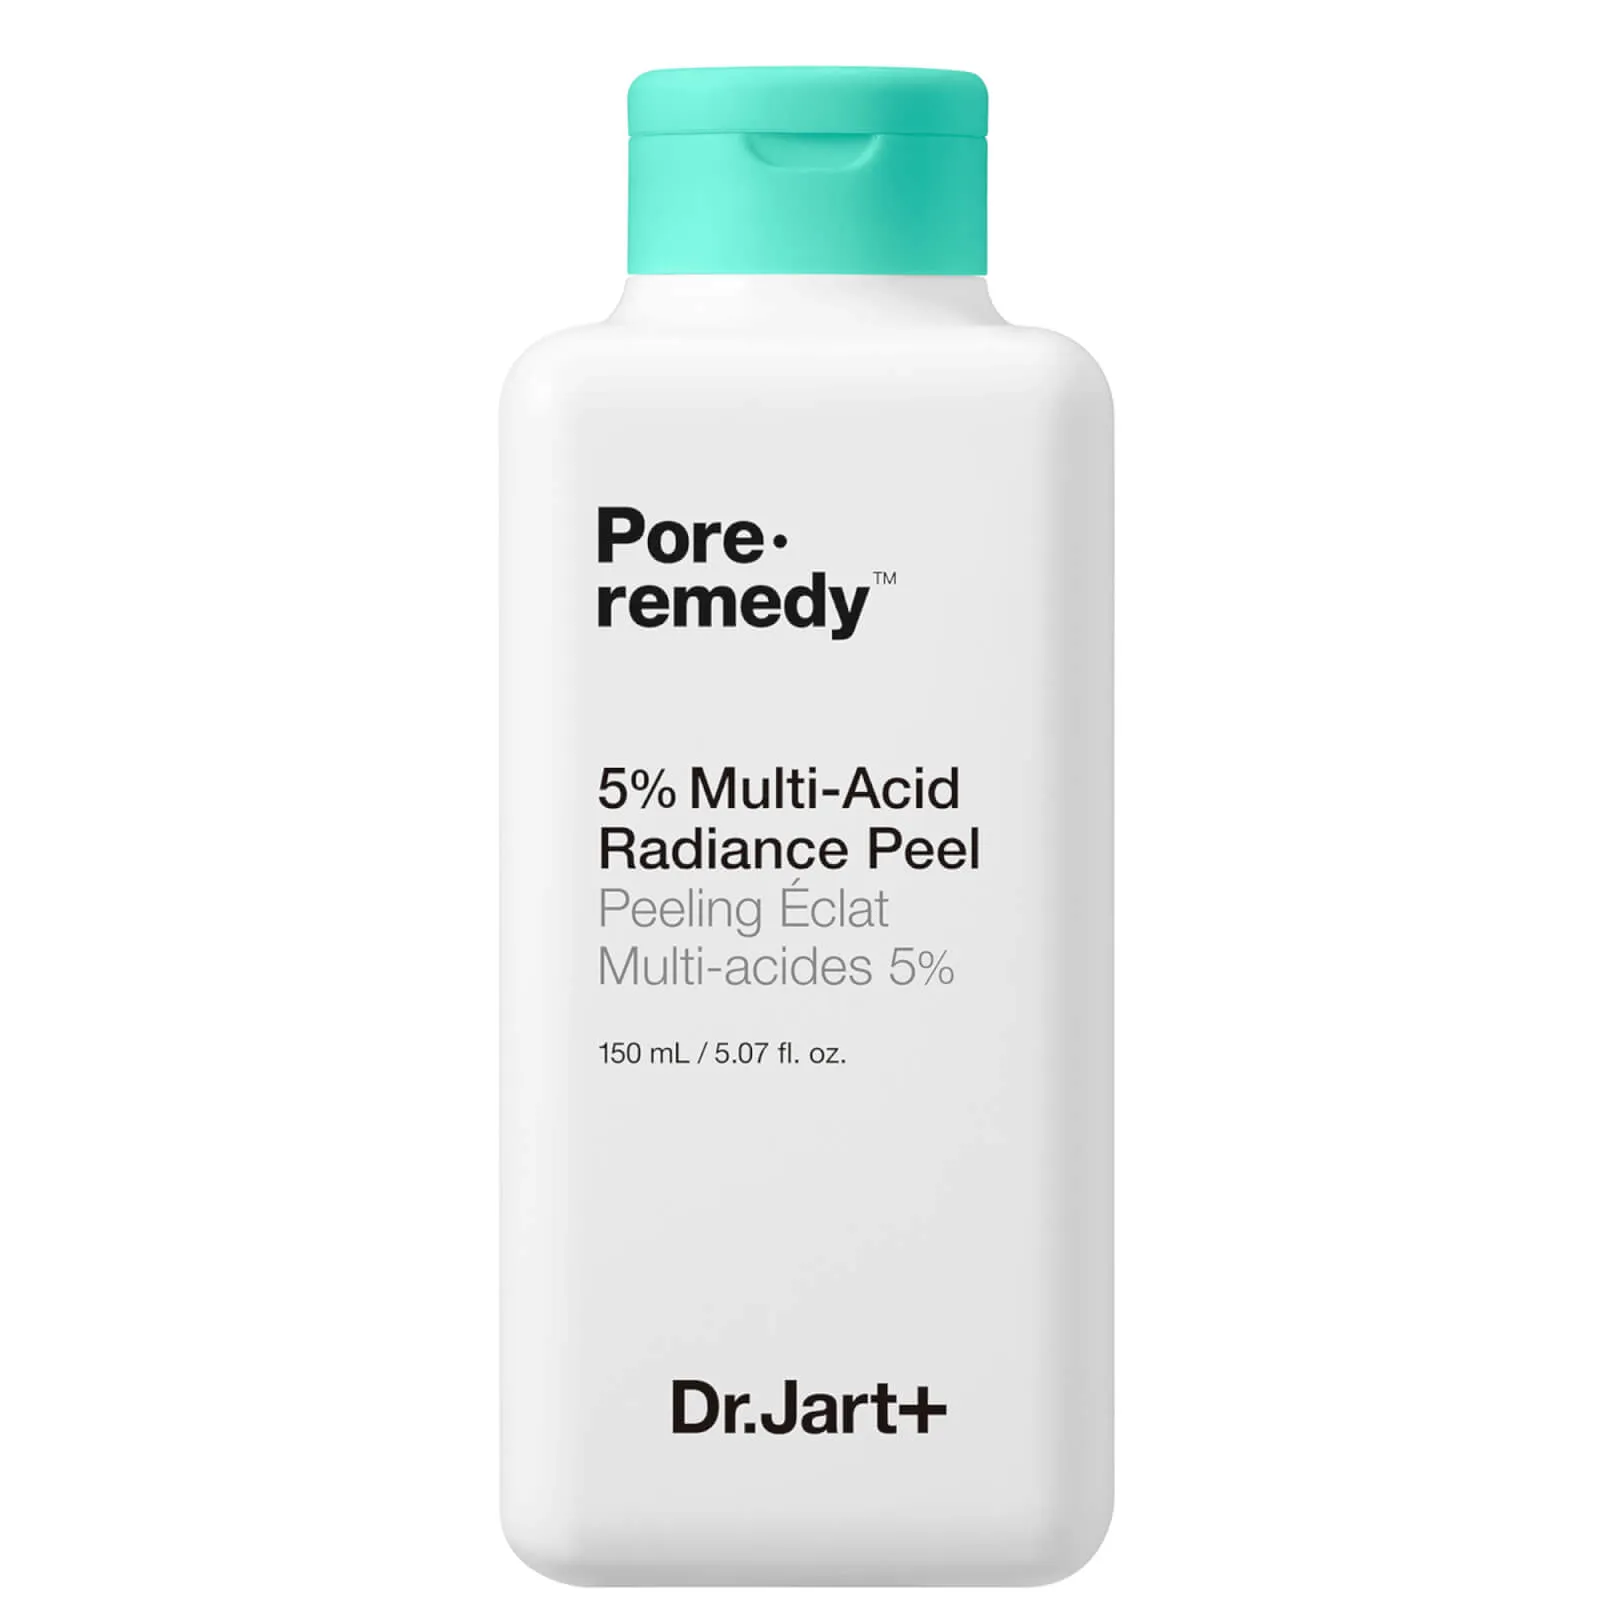  Pore Remedy 5% Multi-Acid Radiance Peel 150ml